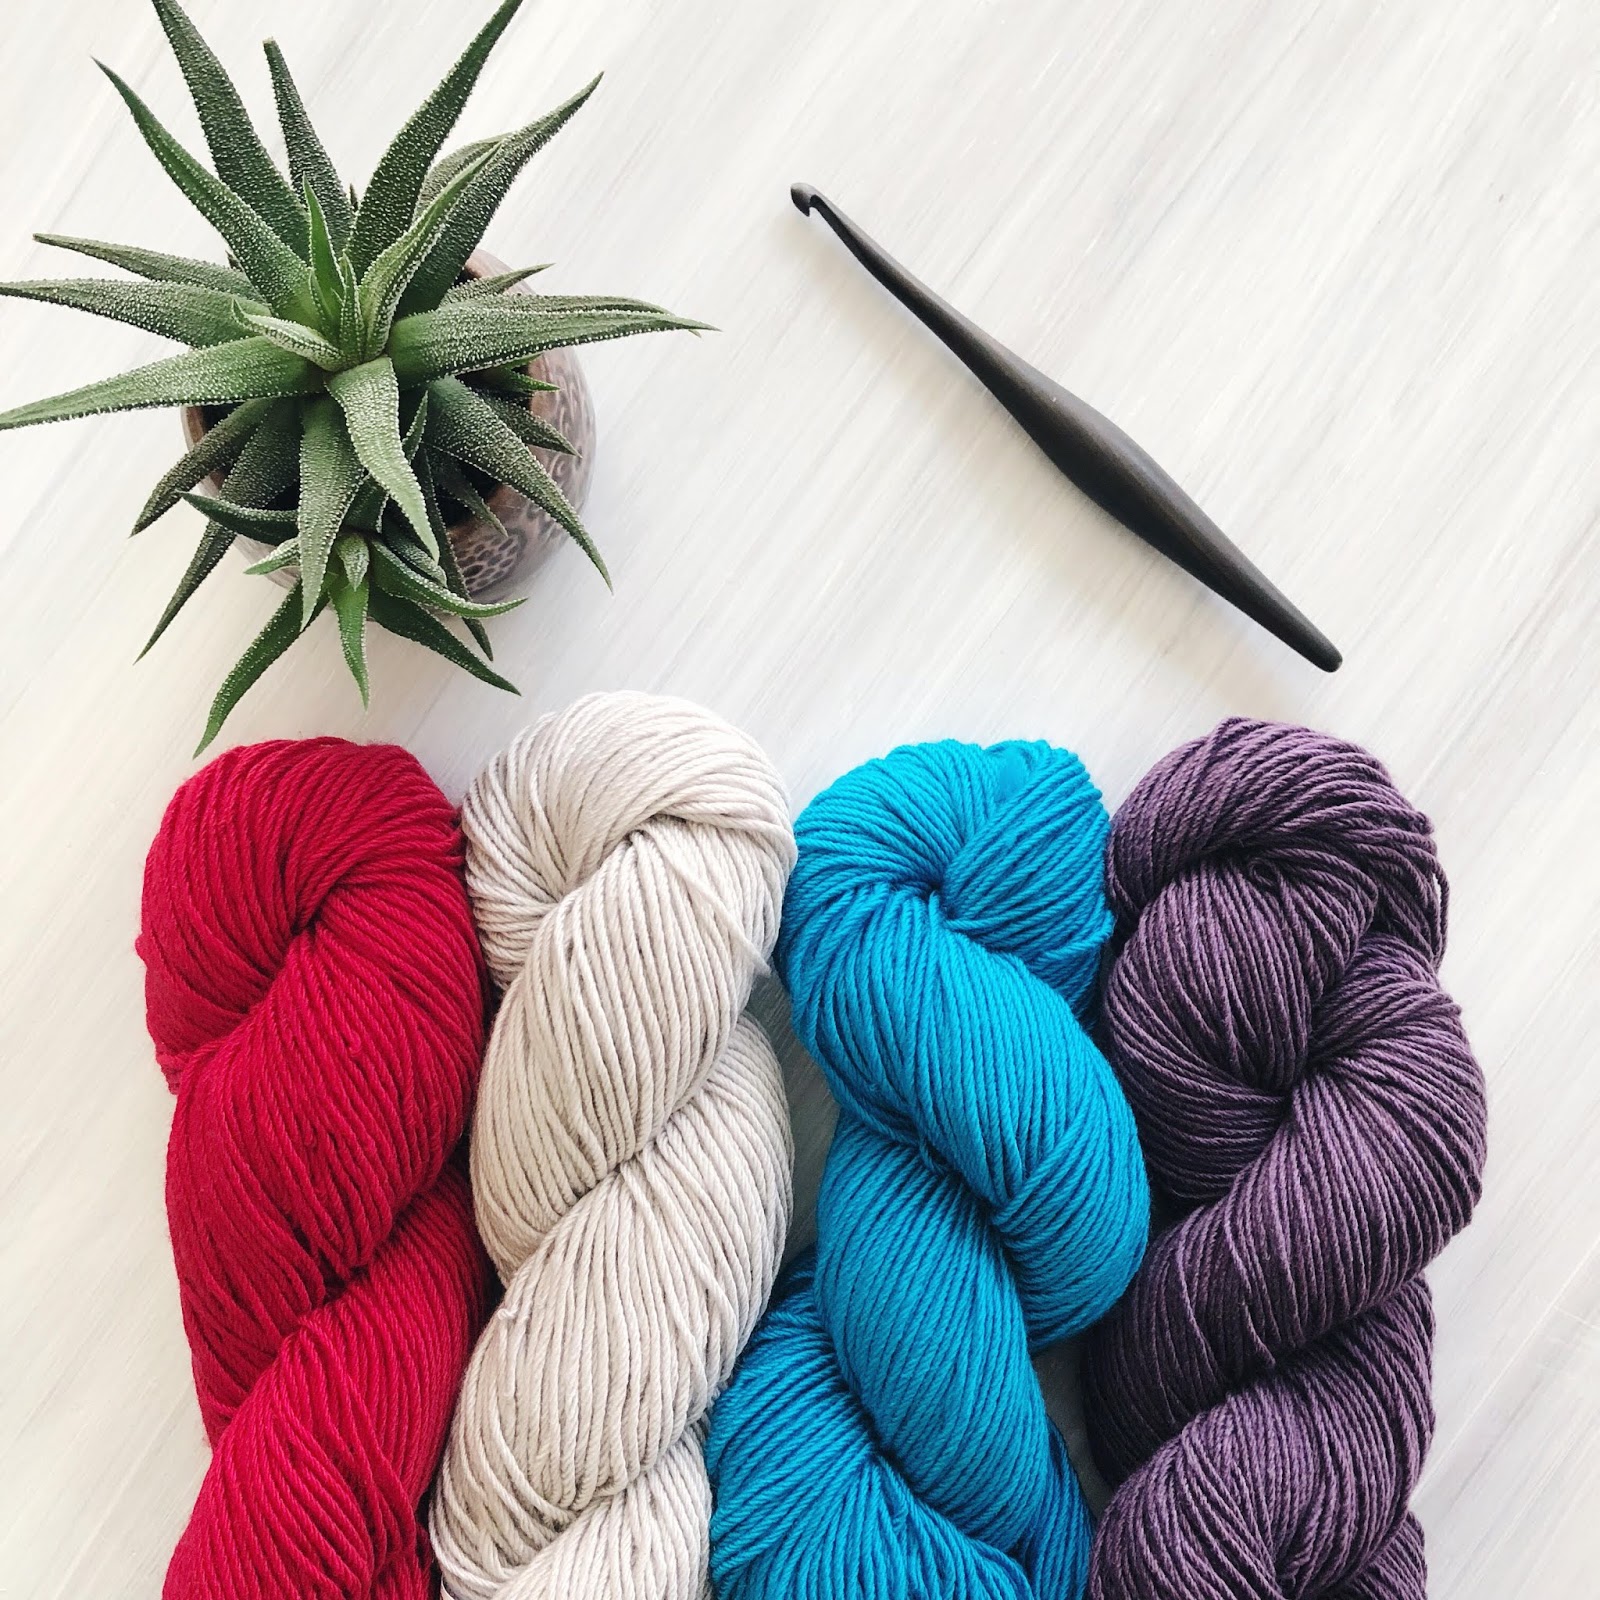 Furls Crochet Hook Review: Why I Love Furls Streamline Crochet Hooks -  Woods and Wool